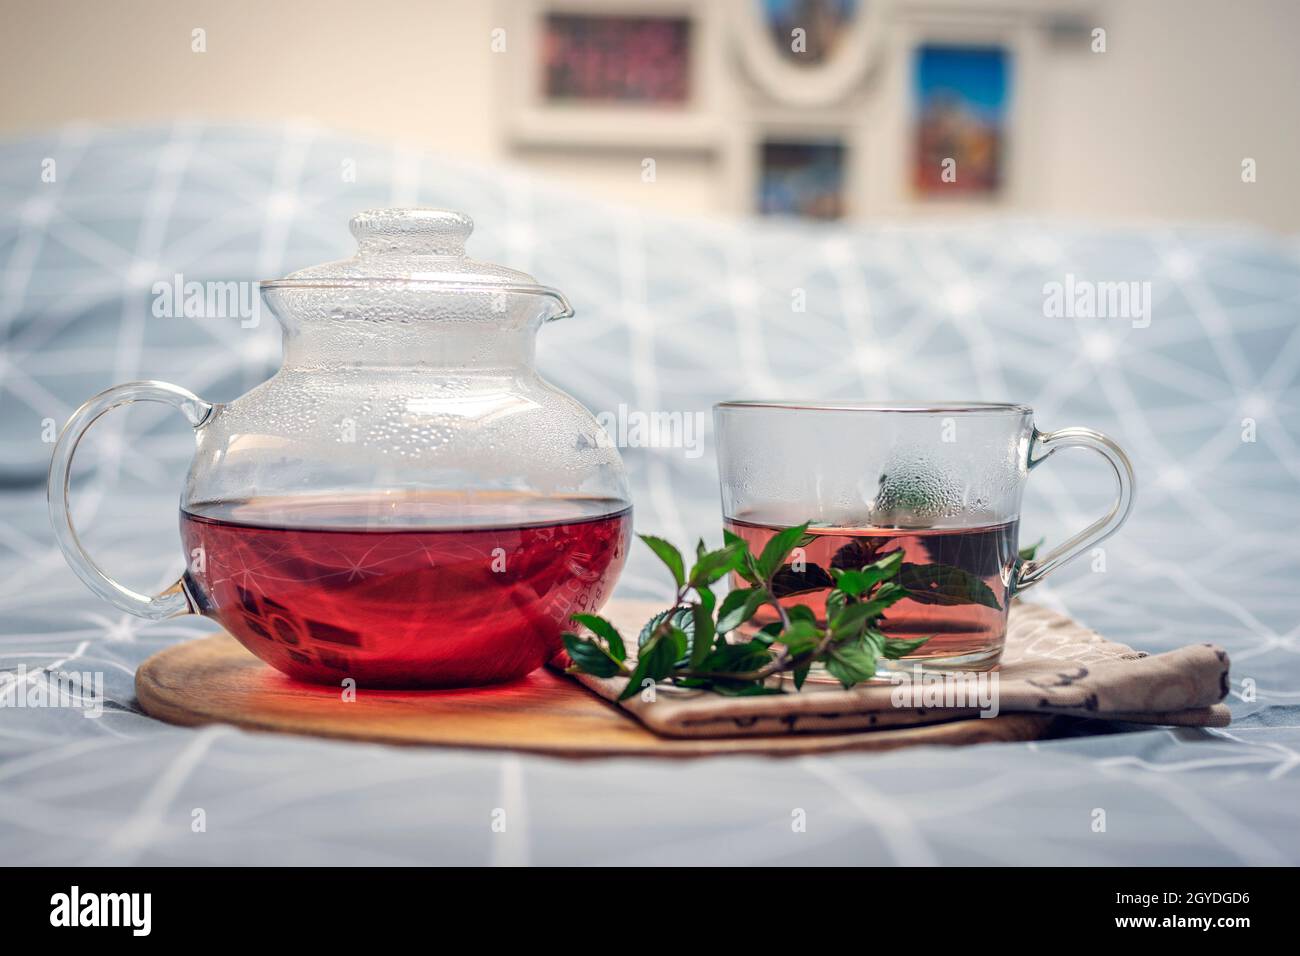 Una taza de té de hierbas y una tetera de cristal en una bandeja de madera en la cama. Concepto de desayuno. Primer plano. Foto de stock